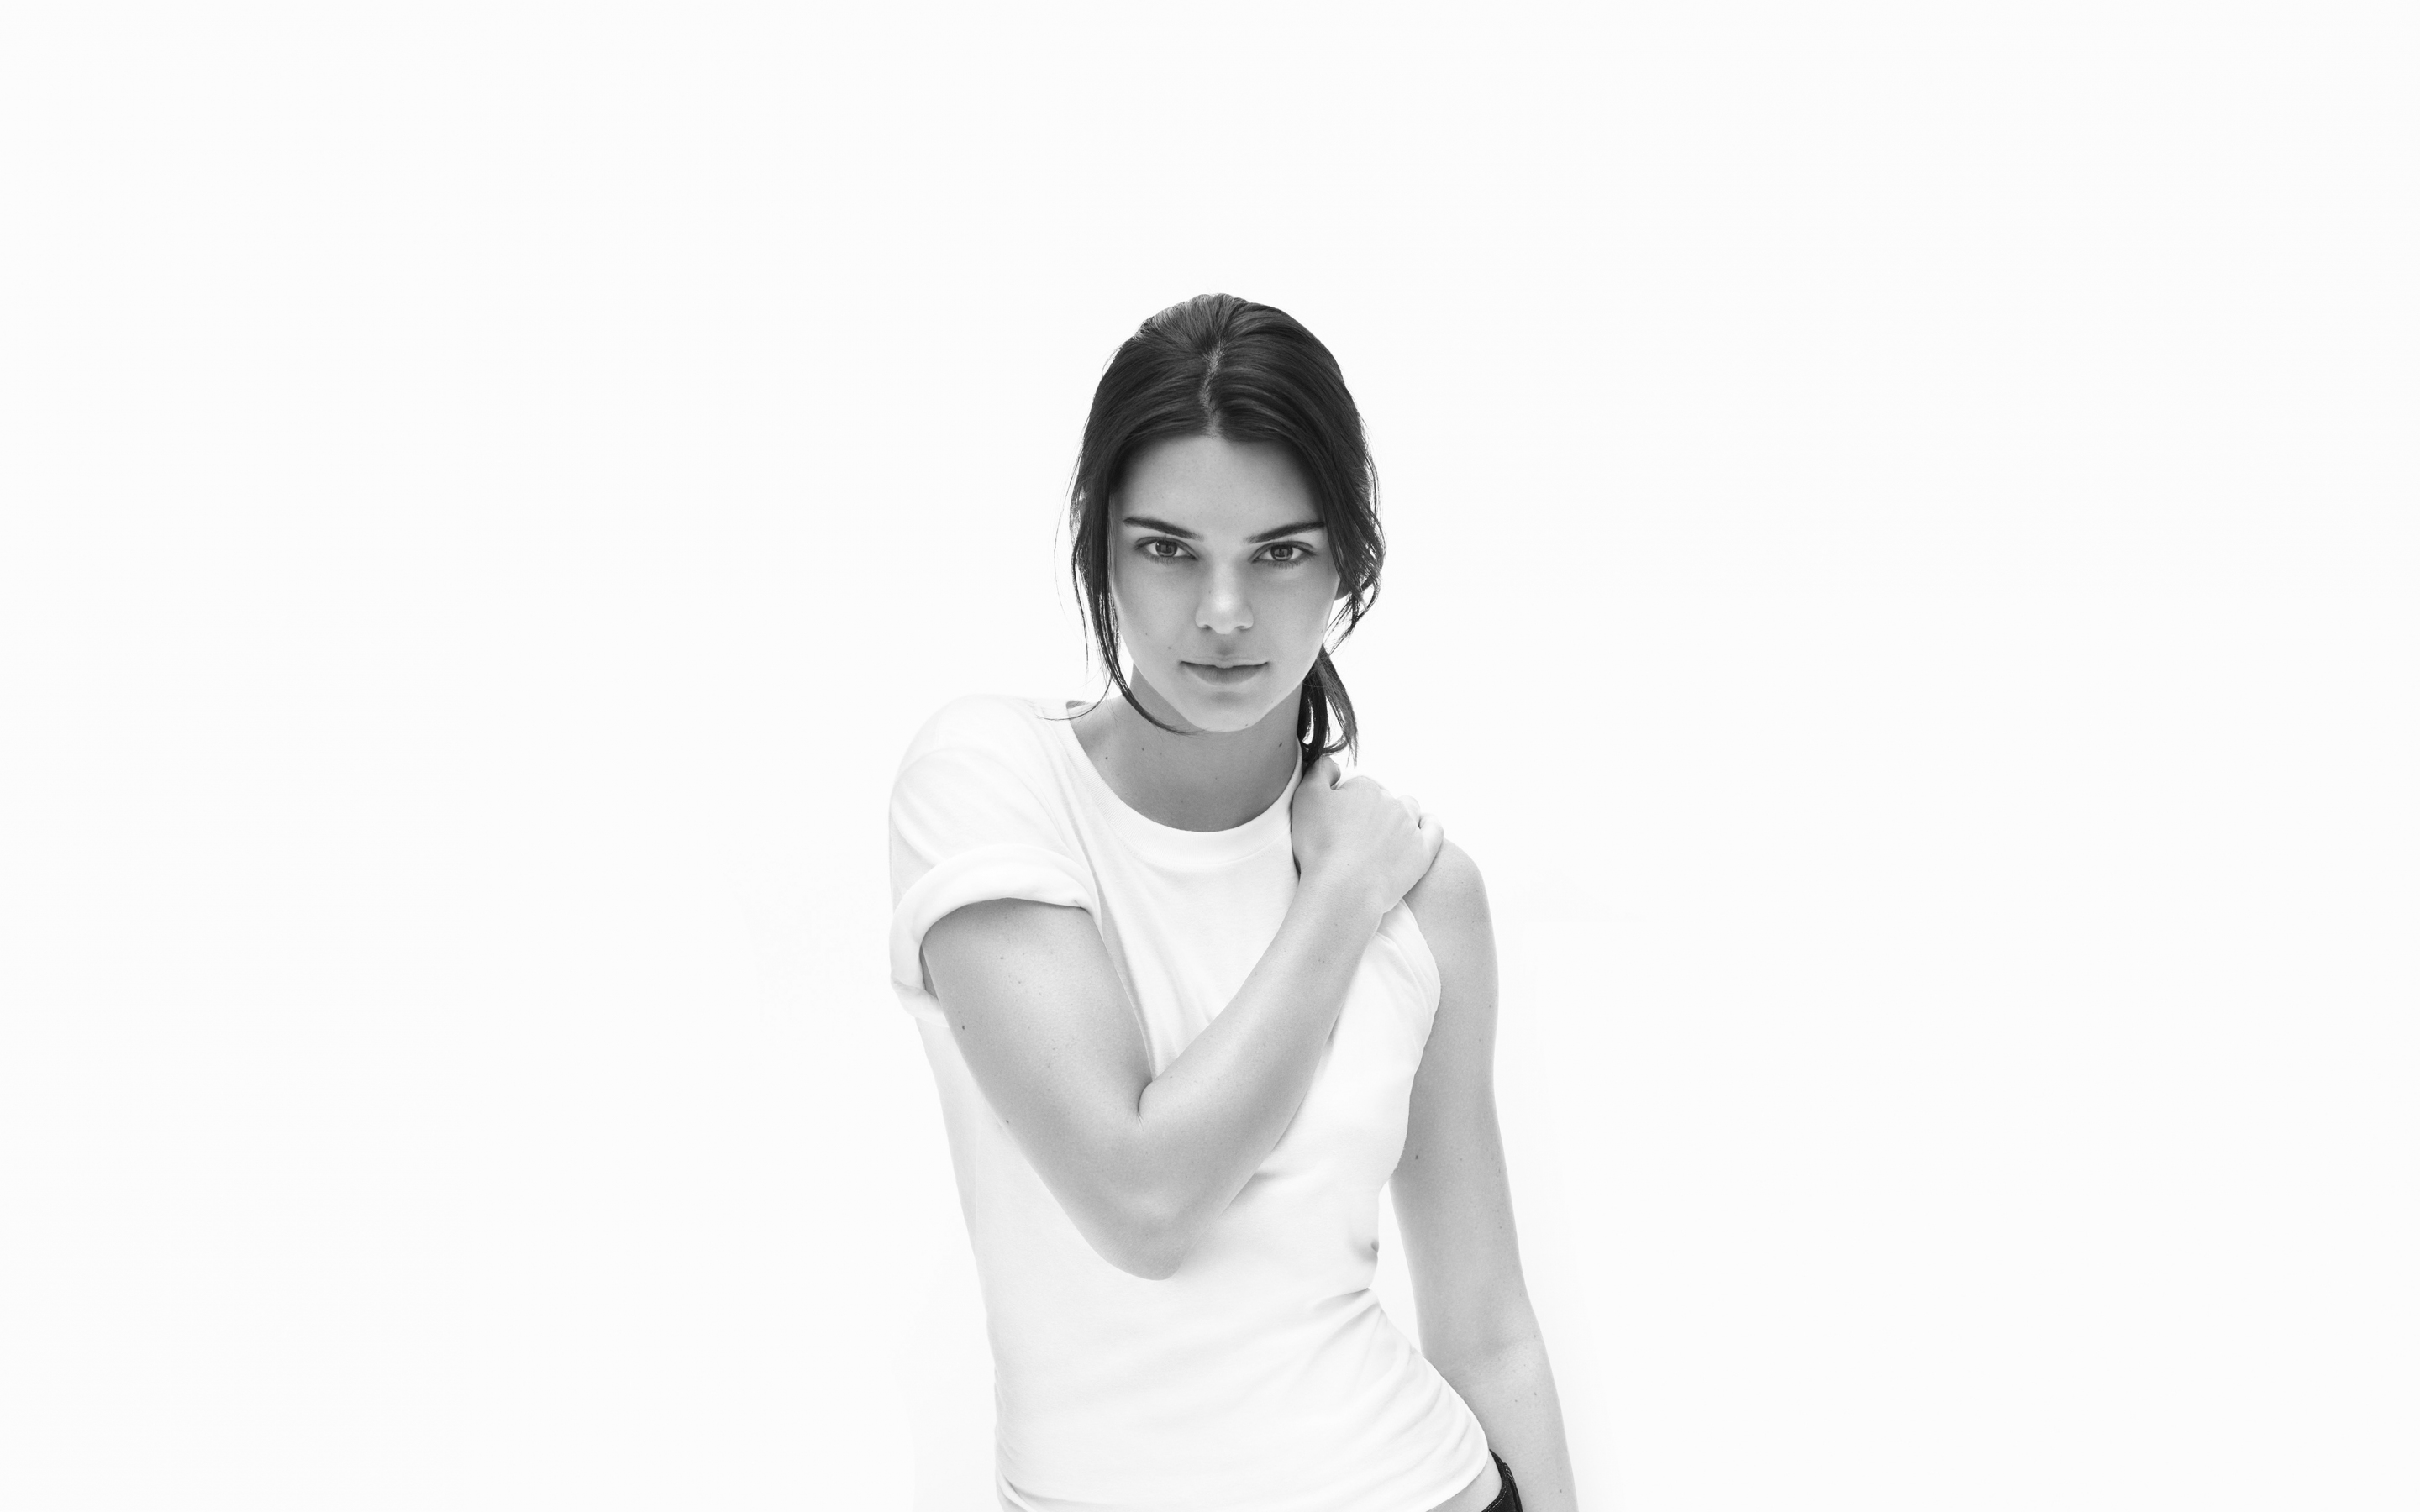 Kendall Jenner, monochrome, supermodel, 2018, 2880x1800 wallpaper